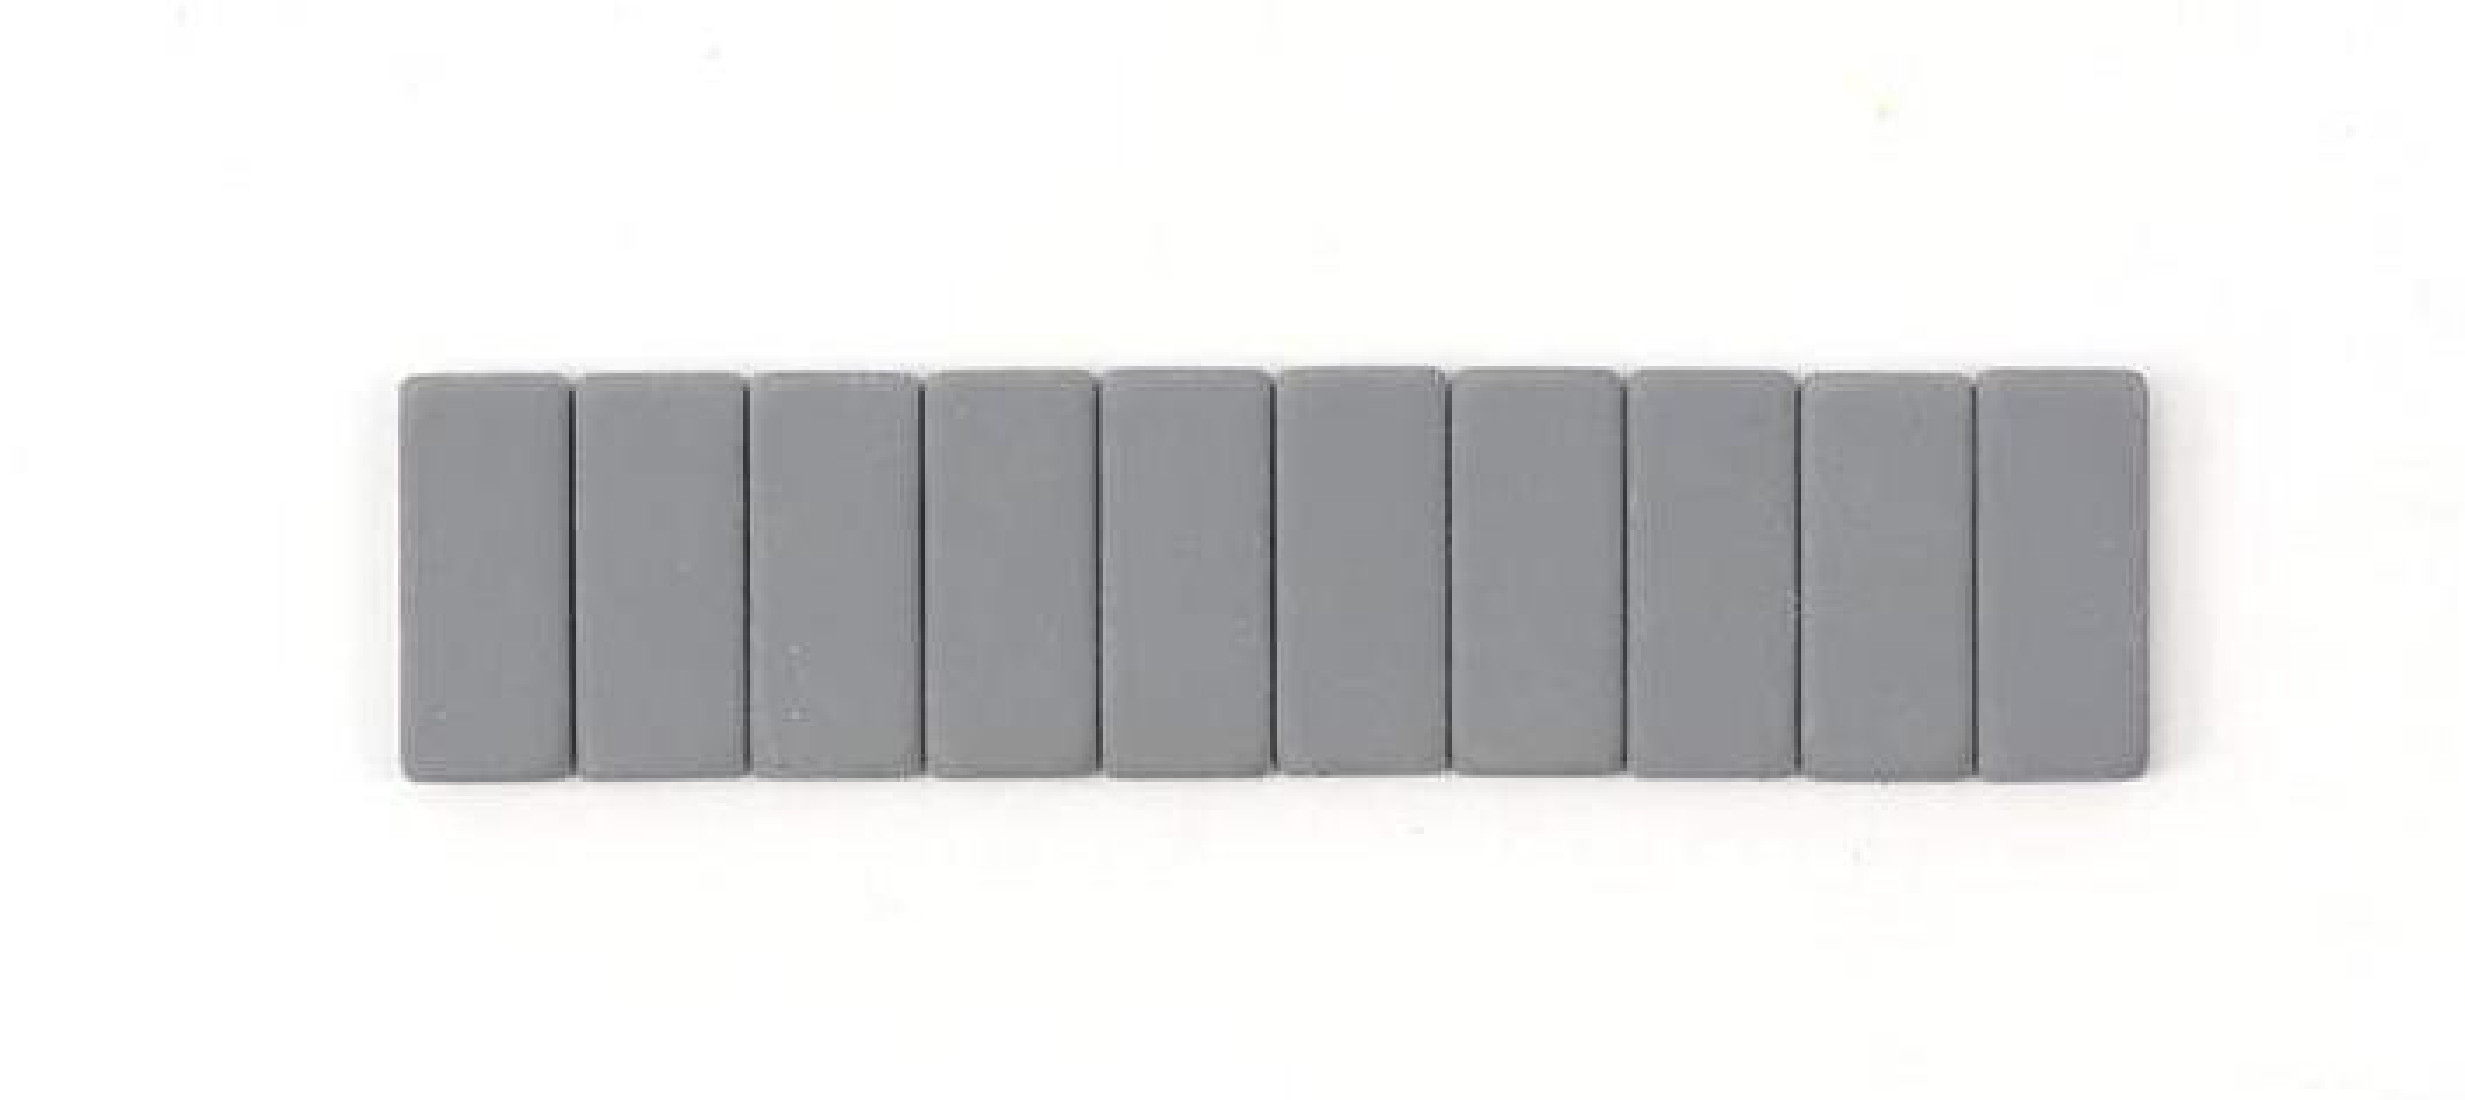 Palomino Blackwing replacement grey erasers